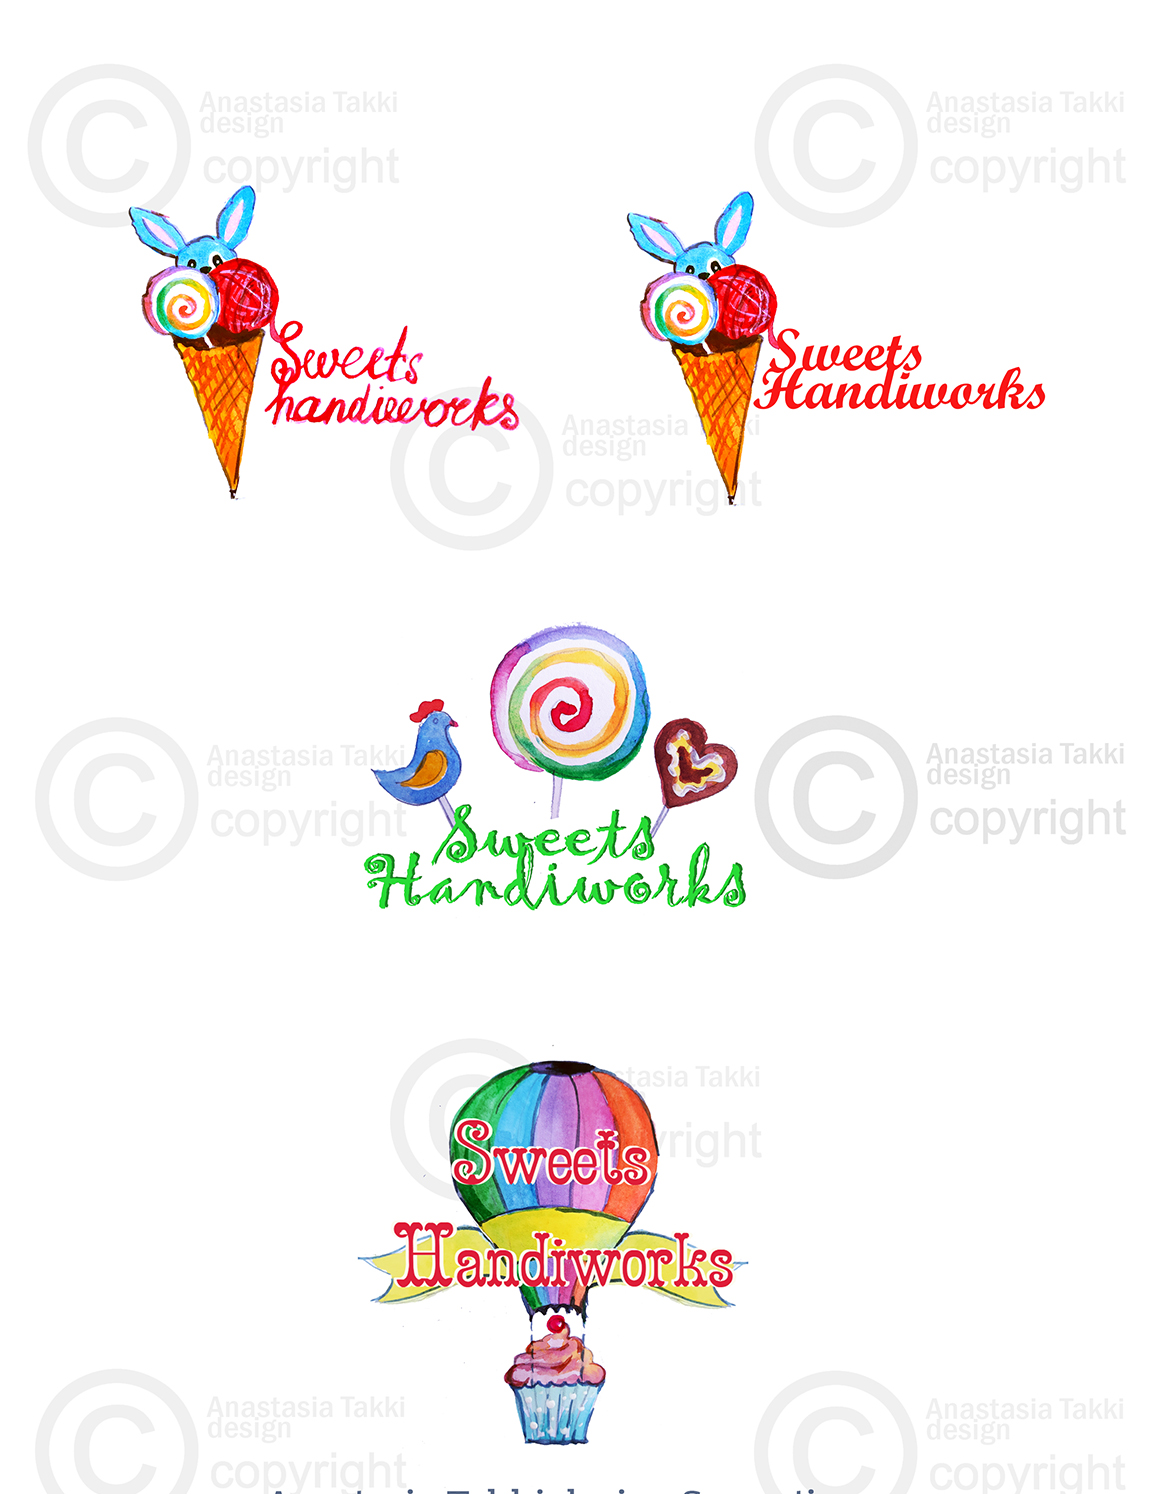 Sweethandiworks logo1 2